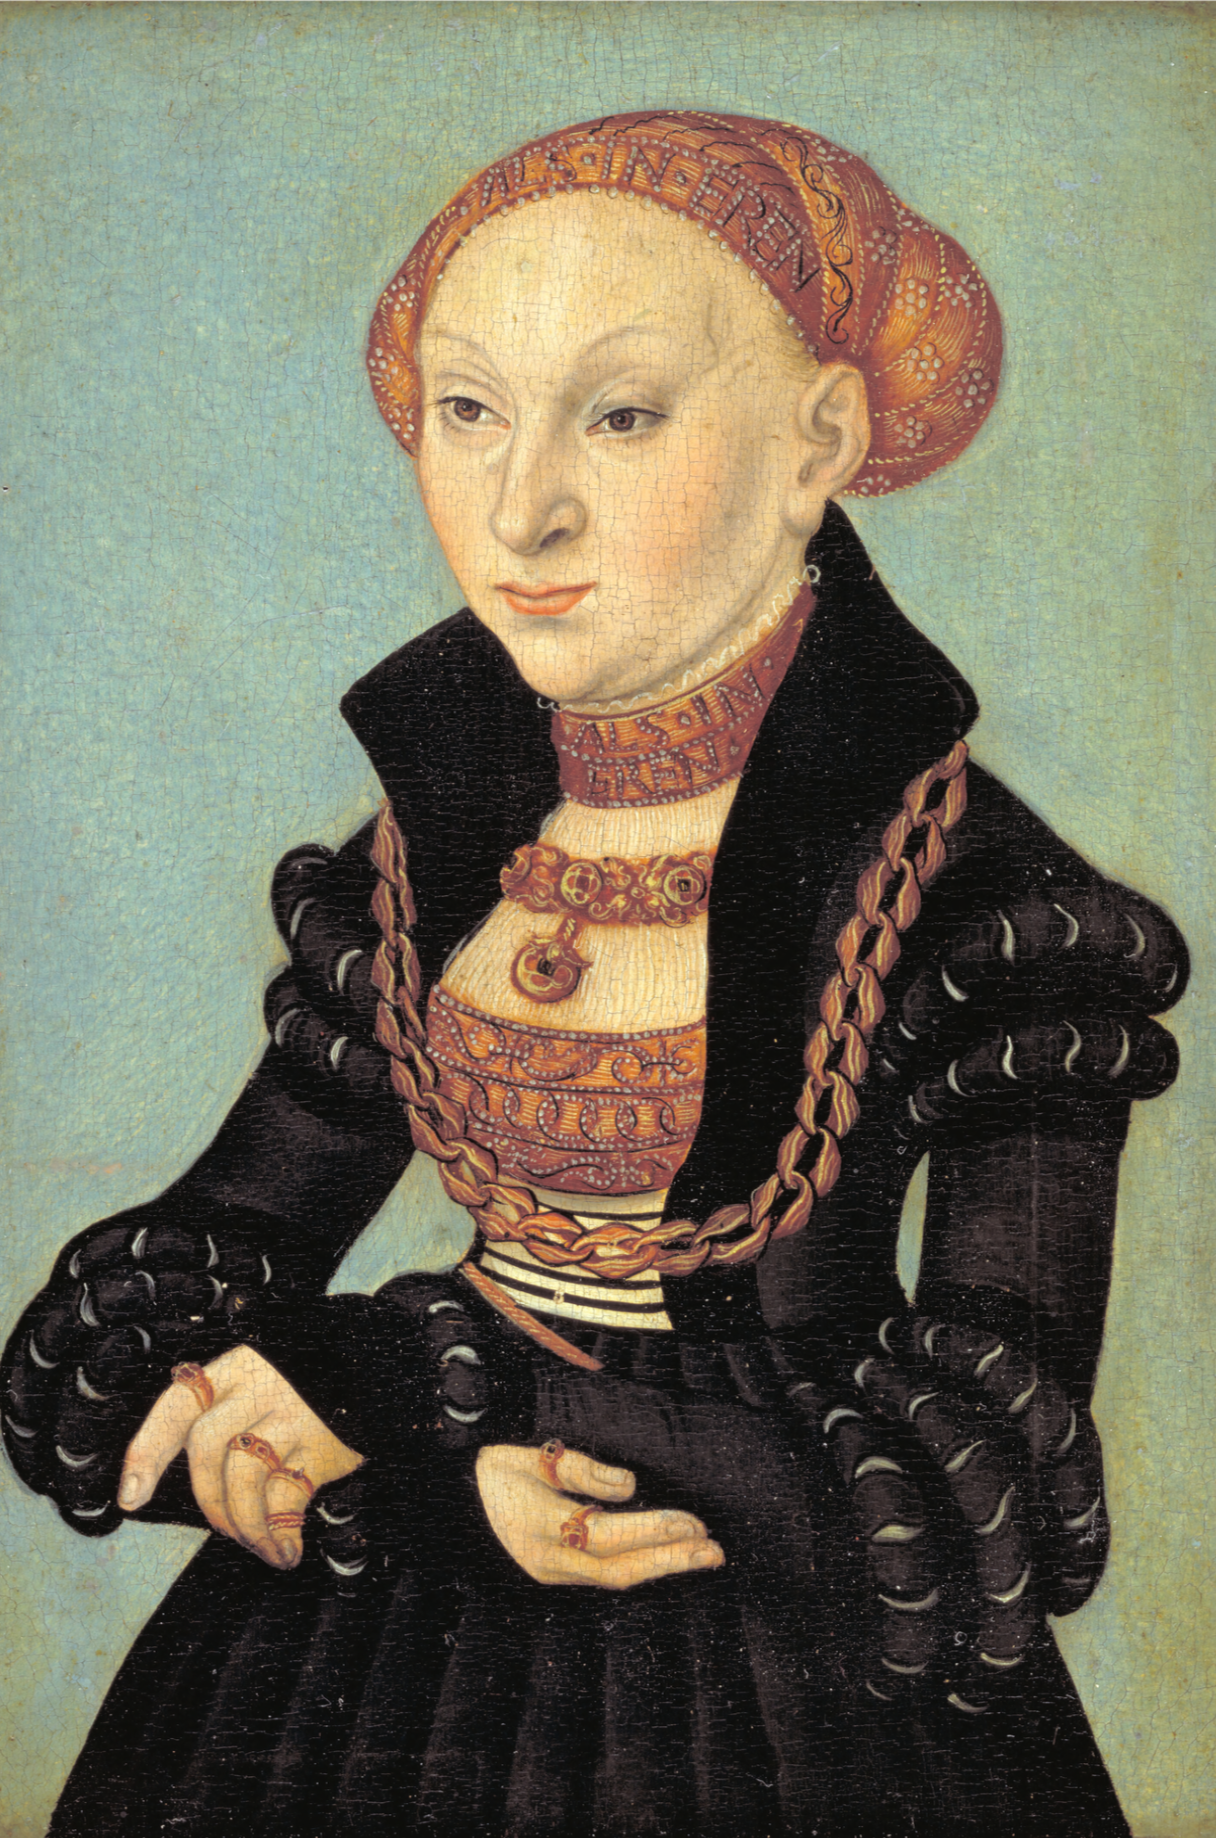 Portrait de la sibylle électrice de Saxe par Lucas Cranach, 1933 - Carte postale